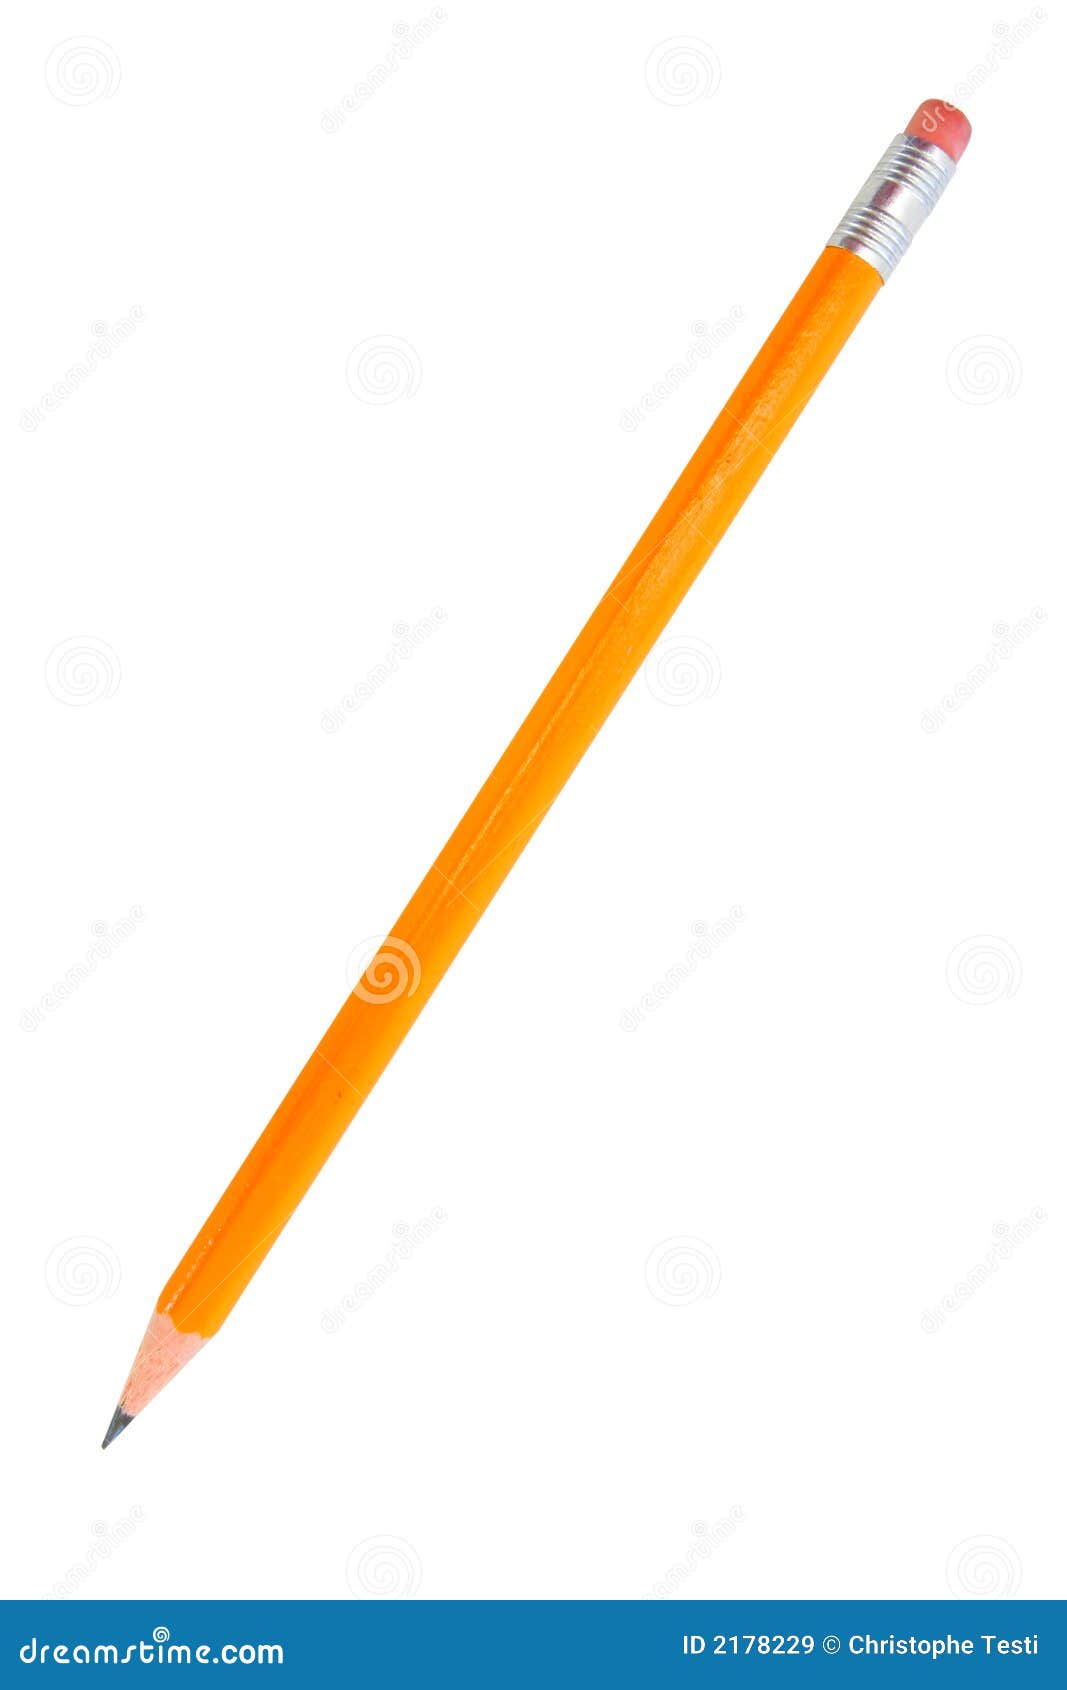 pencil  on white